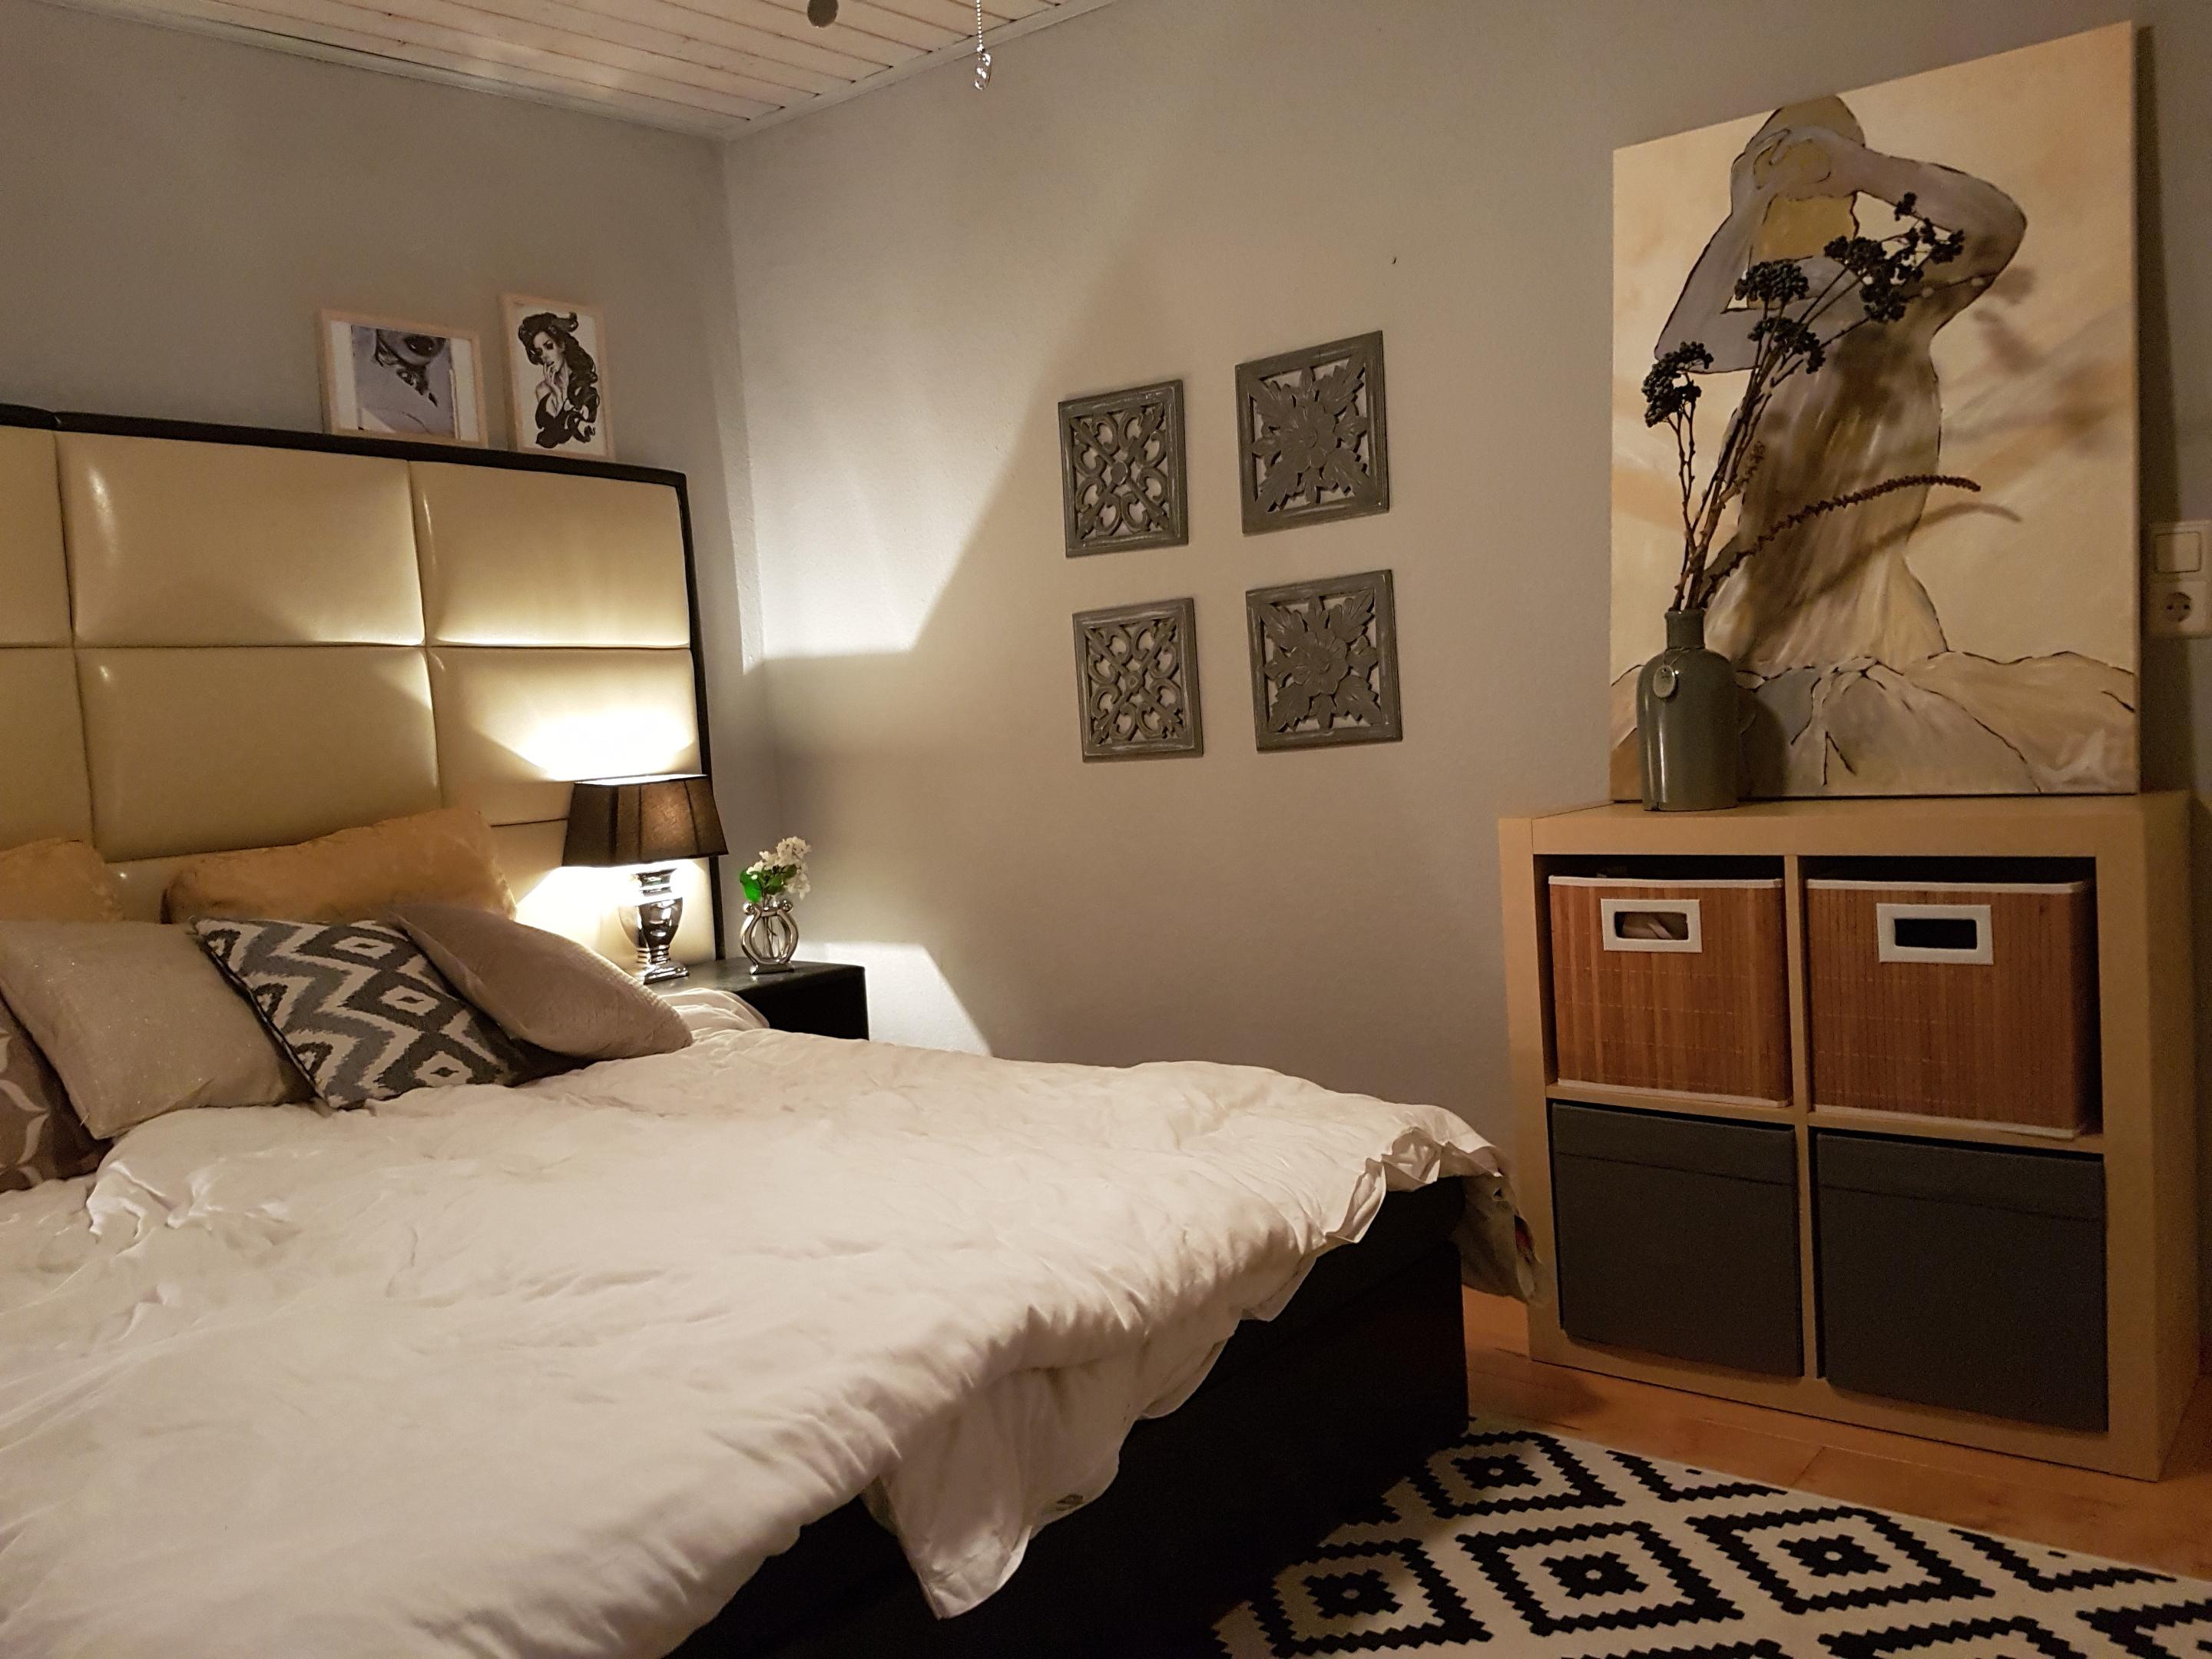 Schlafzimmer Creme grau #rautenmuster ©Anneken145